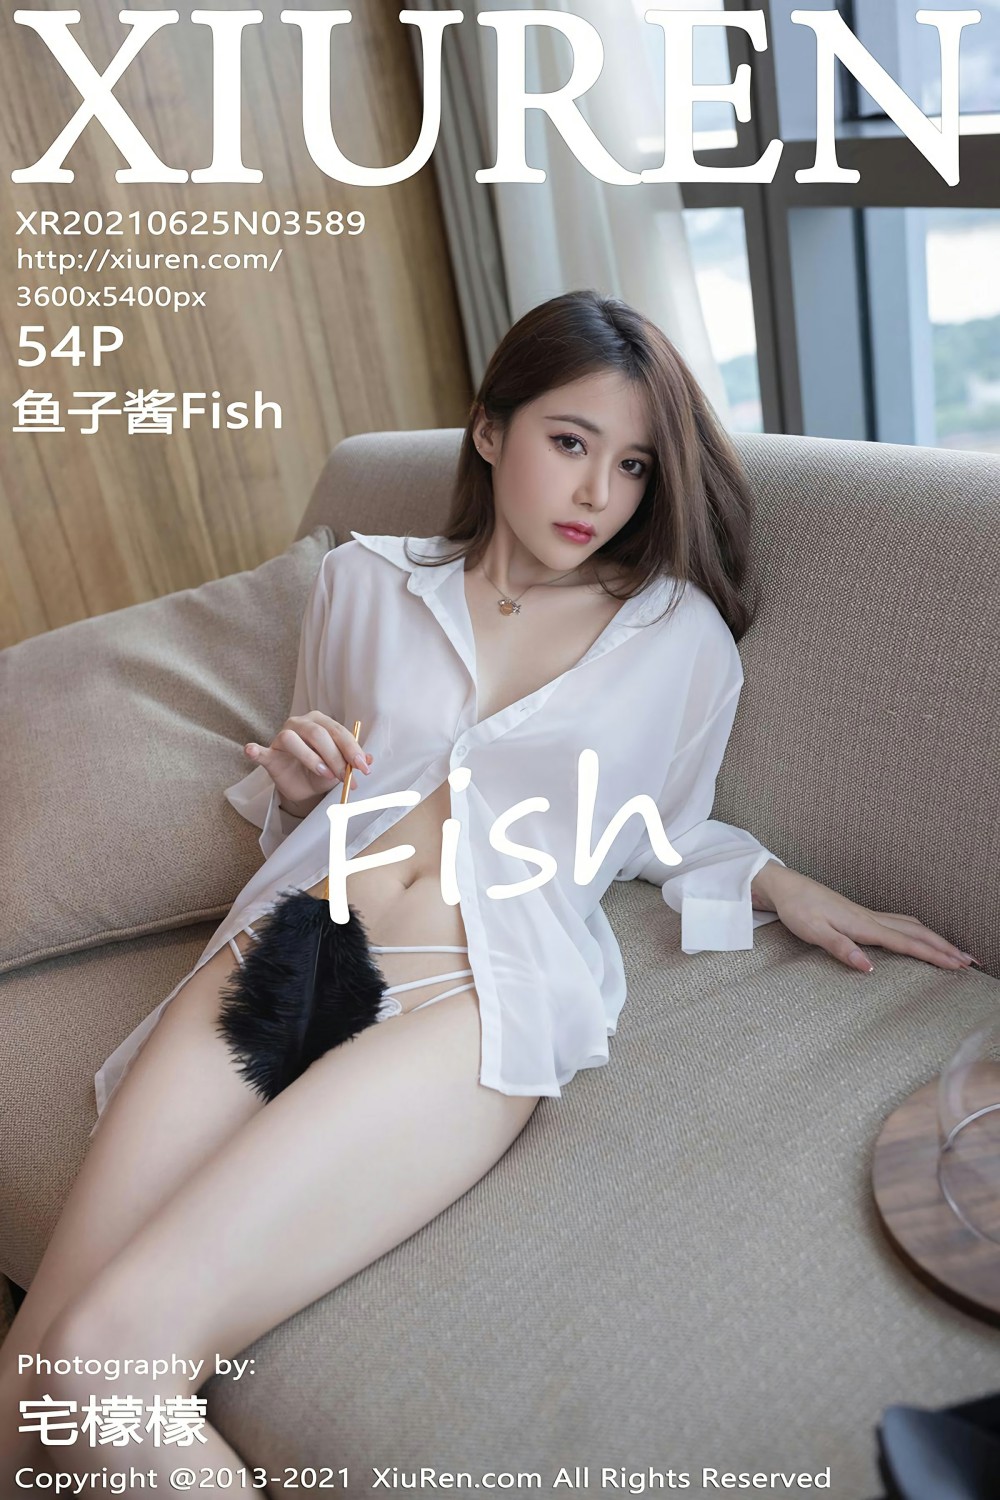 [XiuRen秀人网] 2021.06.25 No.3589 鱼子酱Fish [54+1P]